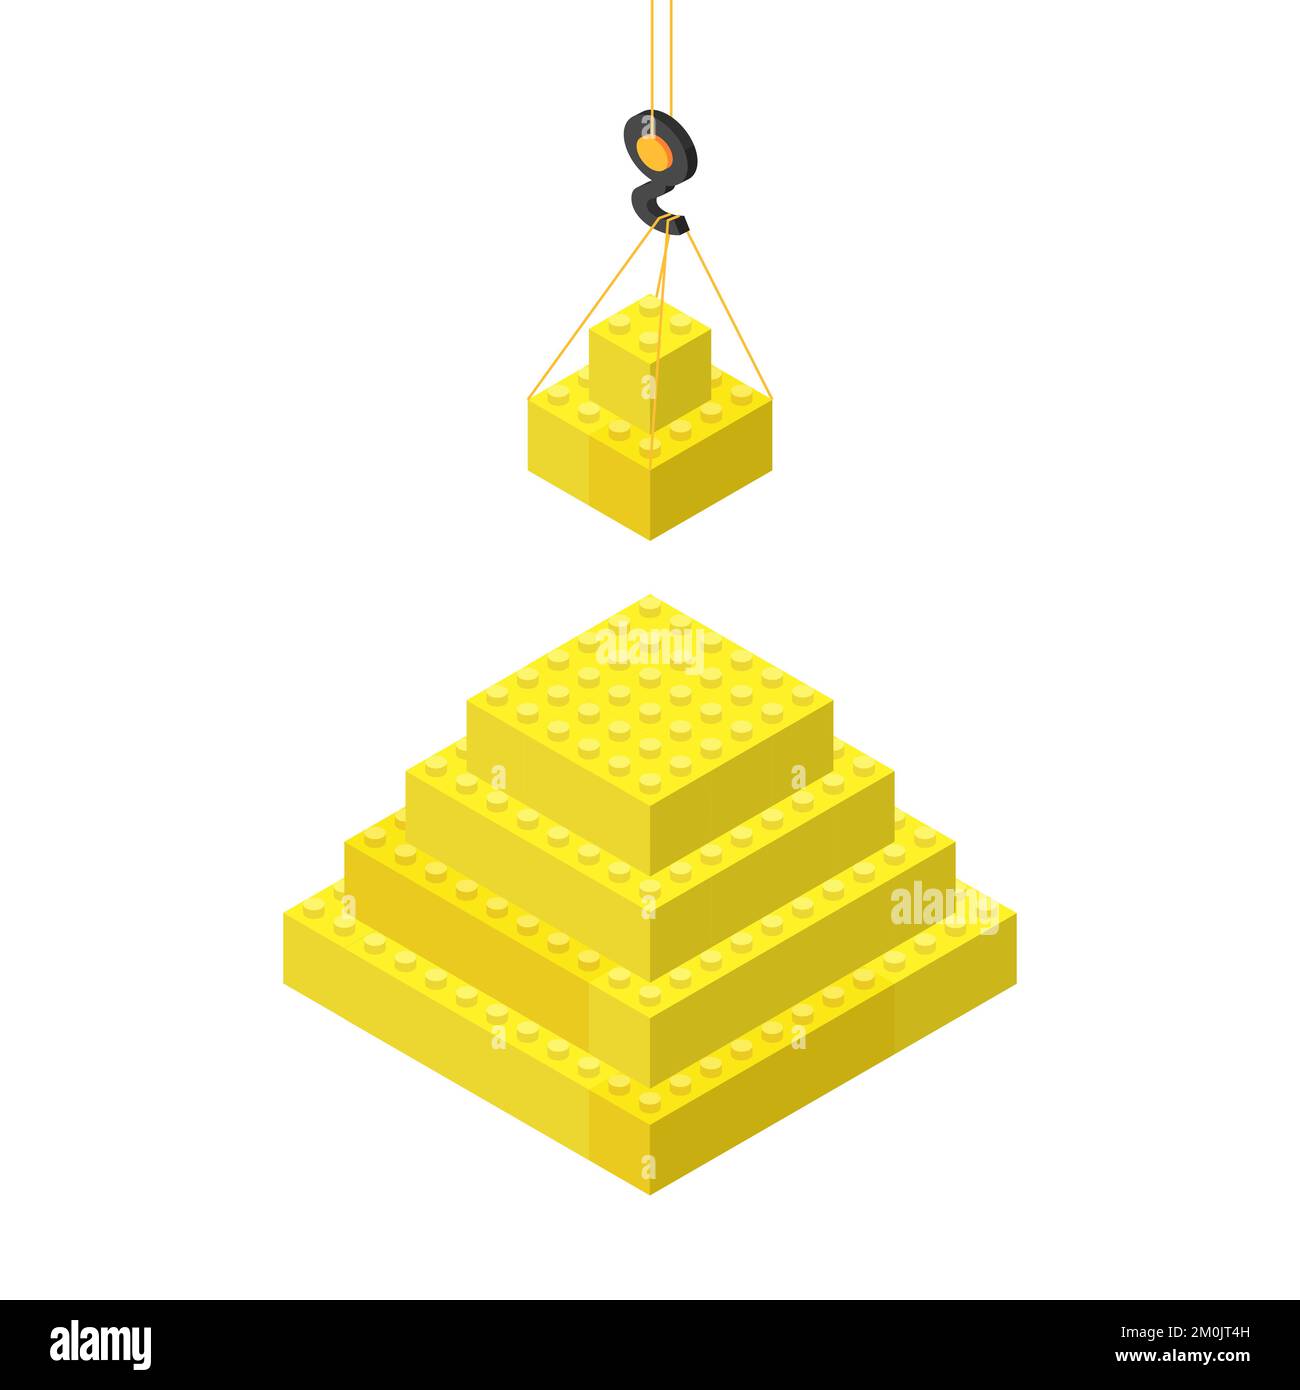 le concept de la construction d'une pyramide, blocs suspendus sur une grue. Illustration vectorielle Illustration de Vecteur